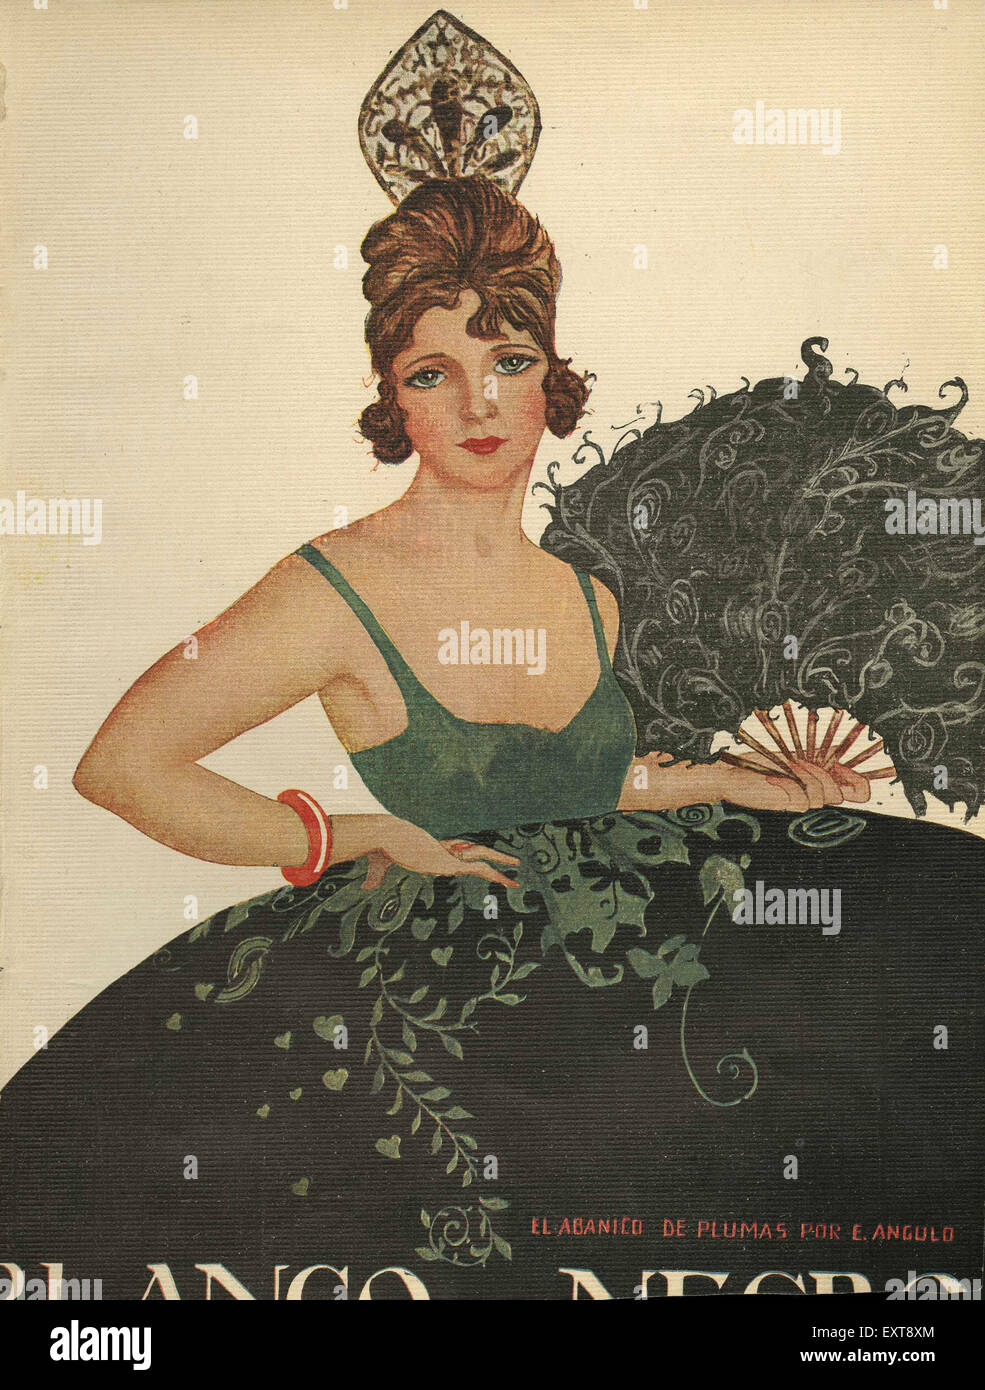 1920s Spain Blanco y Negro Magazine Cover Stock Photo